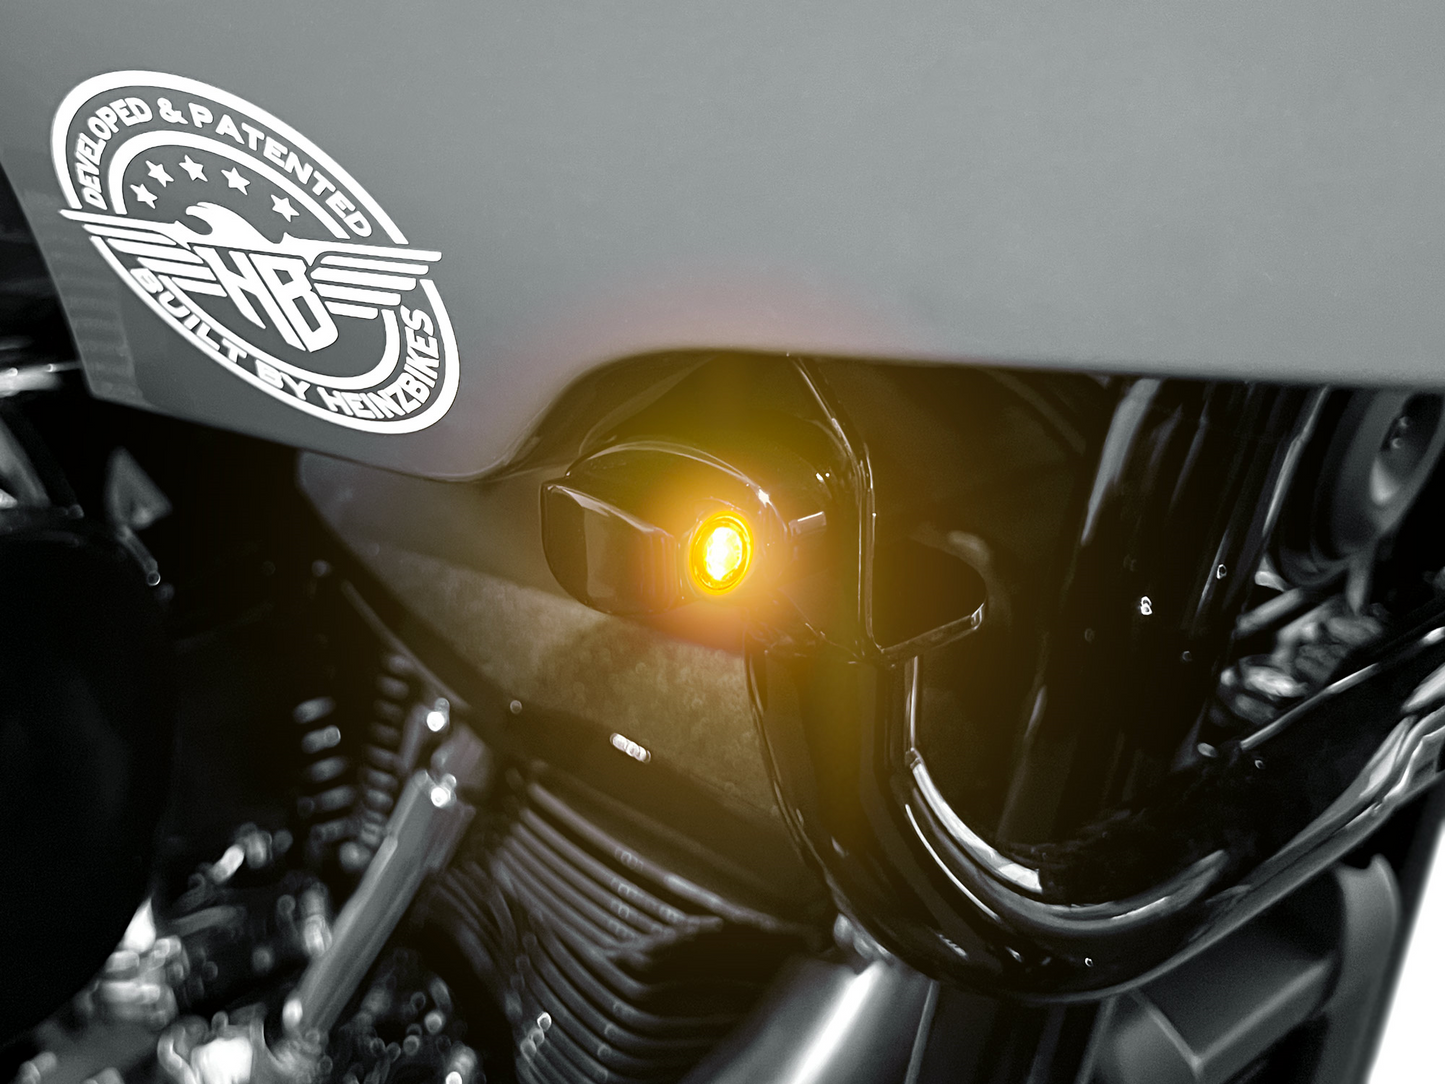 ST Intermitentes Nano Con Ancho Maximo Indicador 24Mm Para Harley Davidson